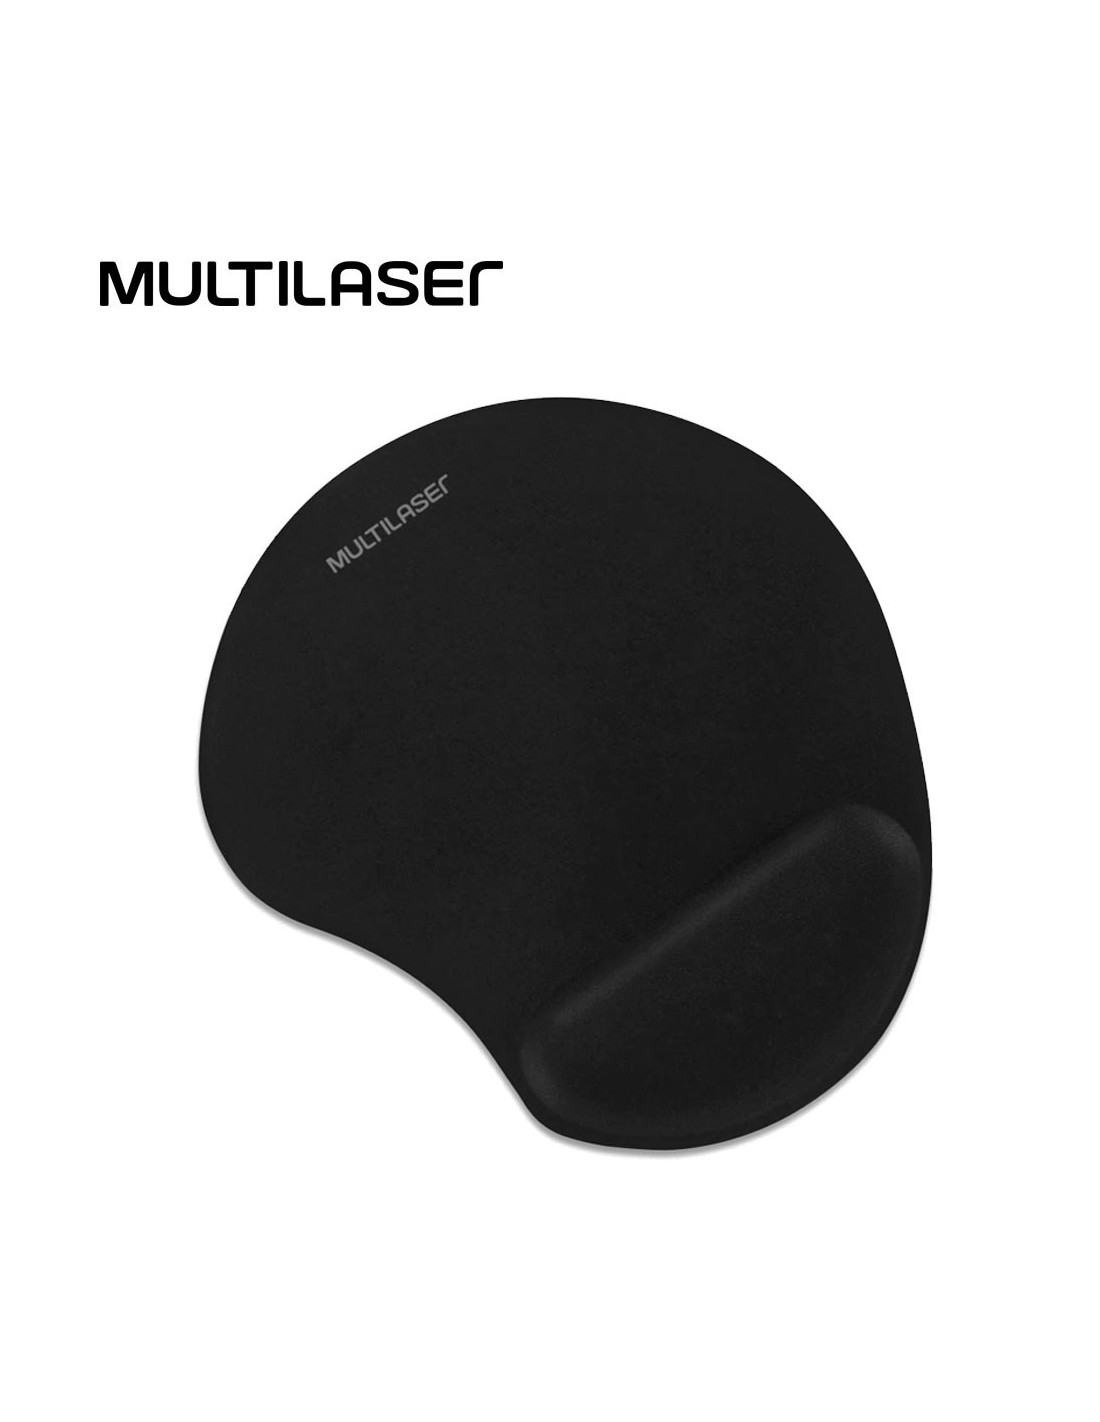 Resplandor propiedad guía Mouse Pad con soporte ergonómico en gel MULTILASER Negro (AC024)